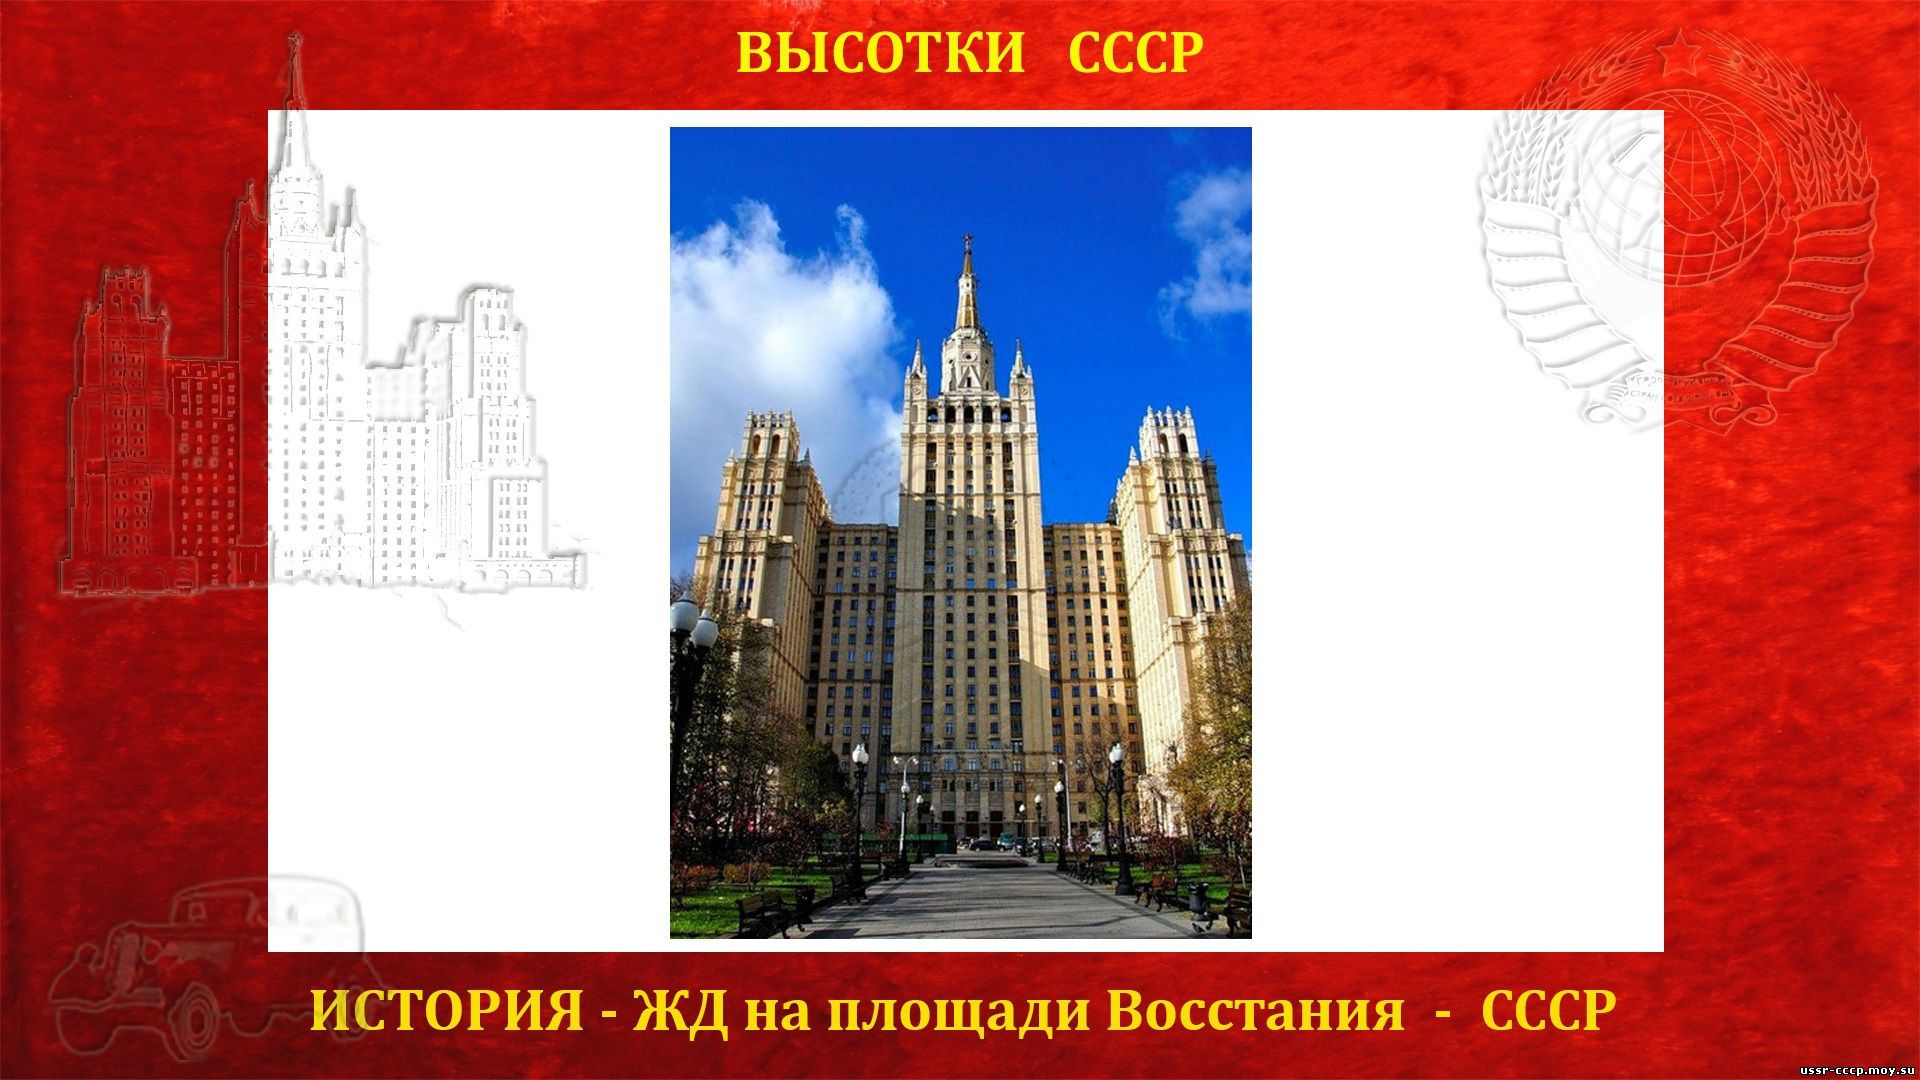 История строительства Сталинской высотки ЖД на площади Восстания (повествование)